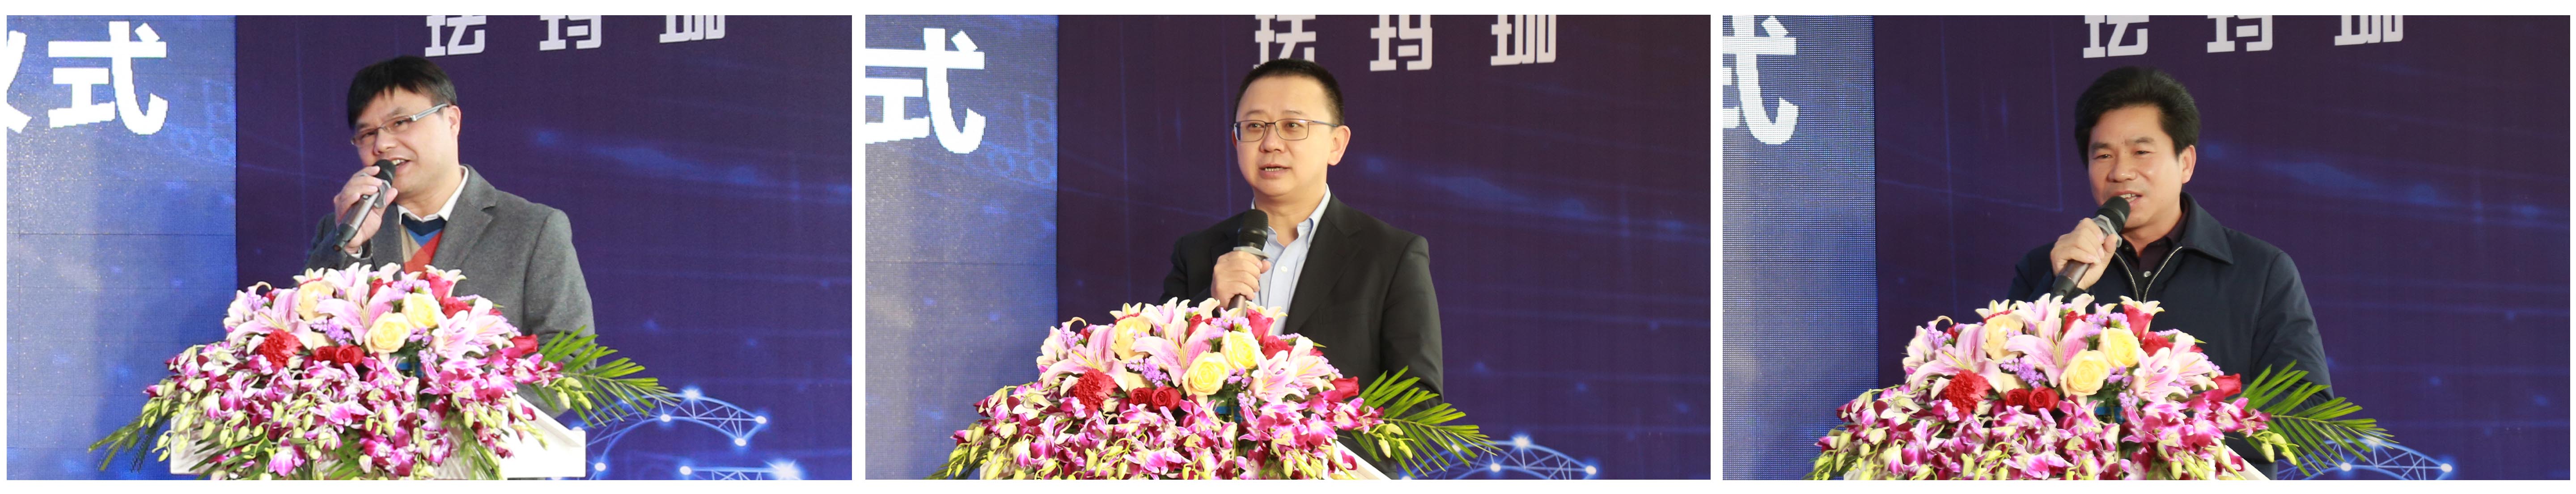 Филиал China Unicom в Ганчжоу сотрудничает с Pharmapack для создания демонстрационной базы интеллектуального производства промышленного Интернета 5G +插图1